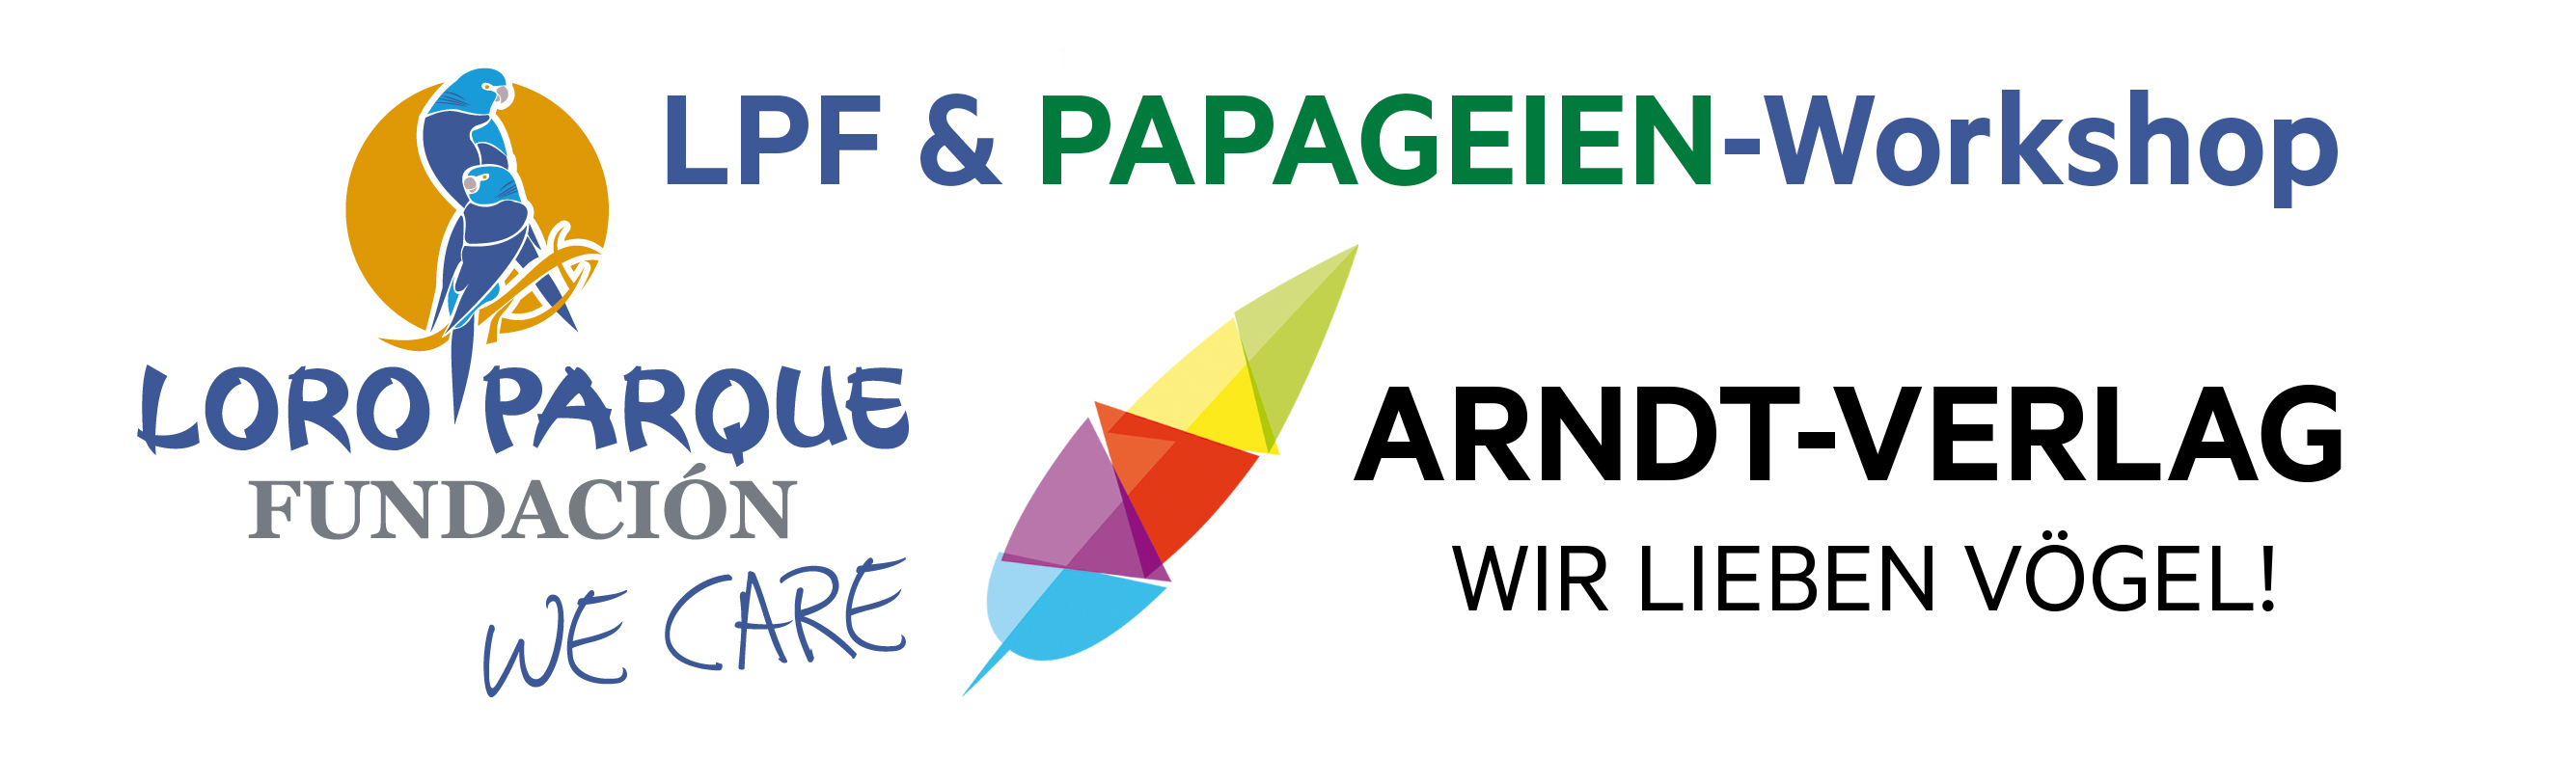 2017_LPF-PAPAGEIEN-Workshop_Logo.jpg